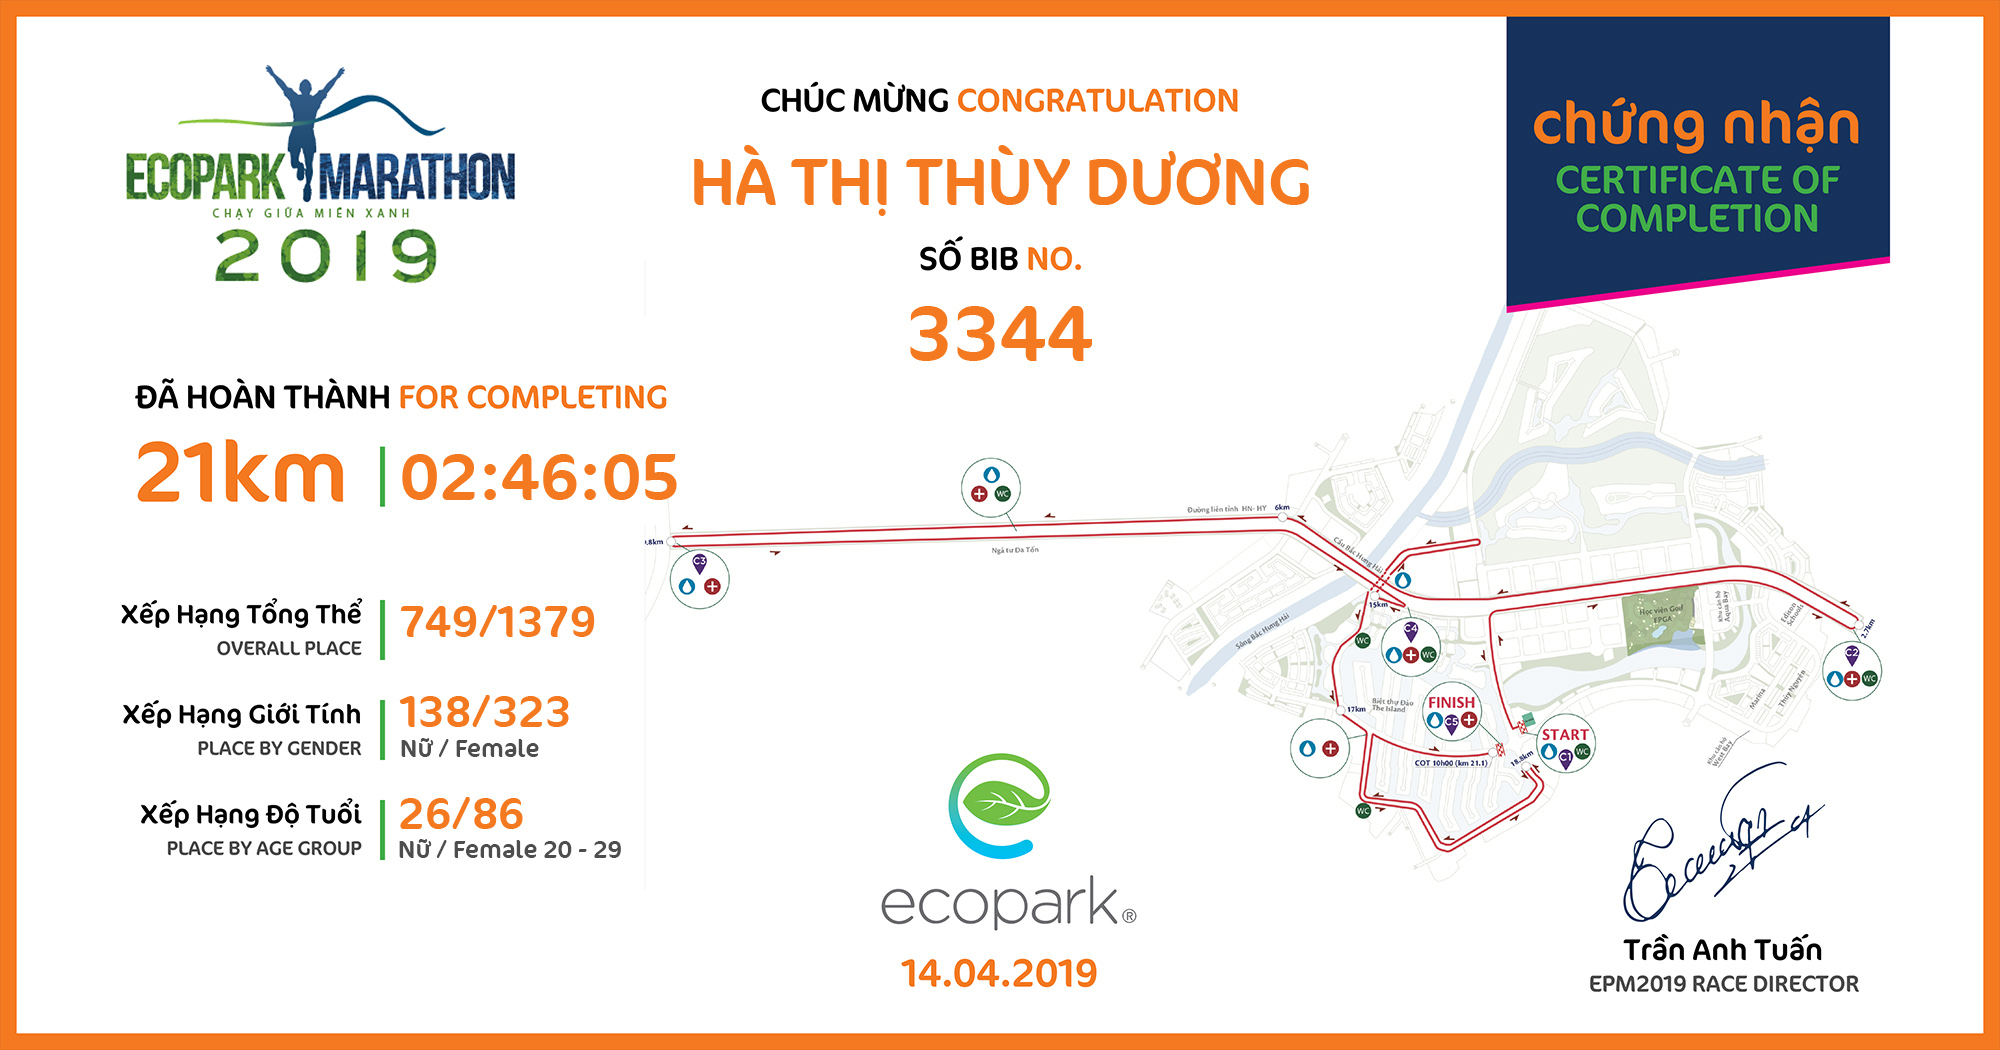 3344 - Hà Thị Thùy Dương